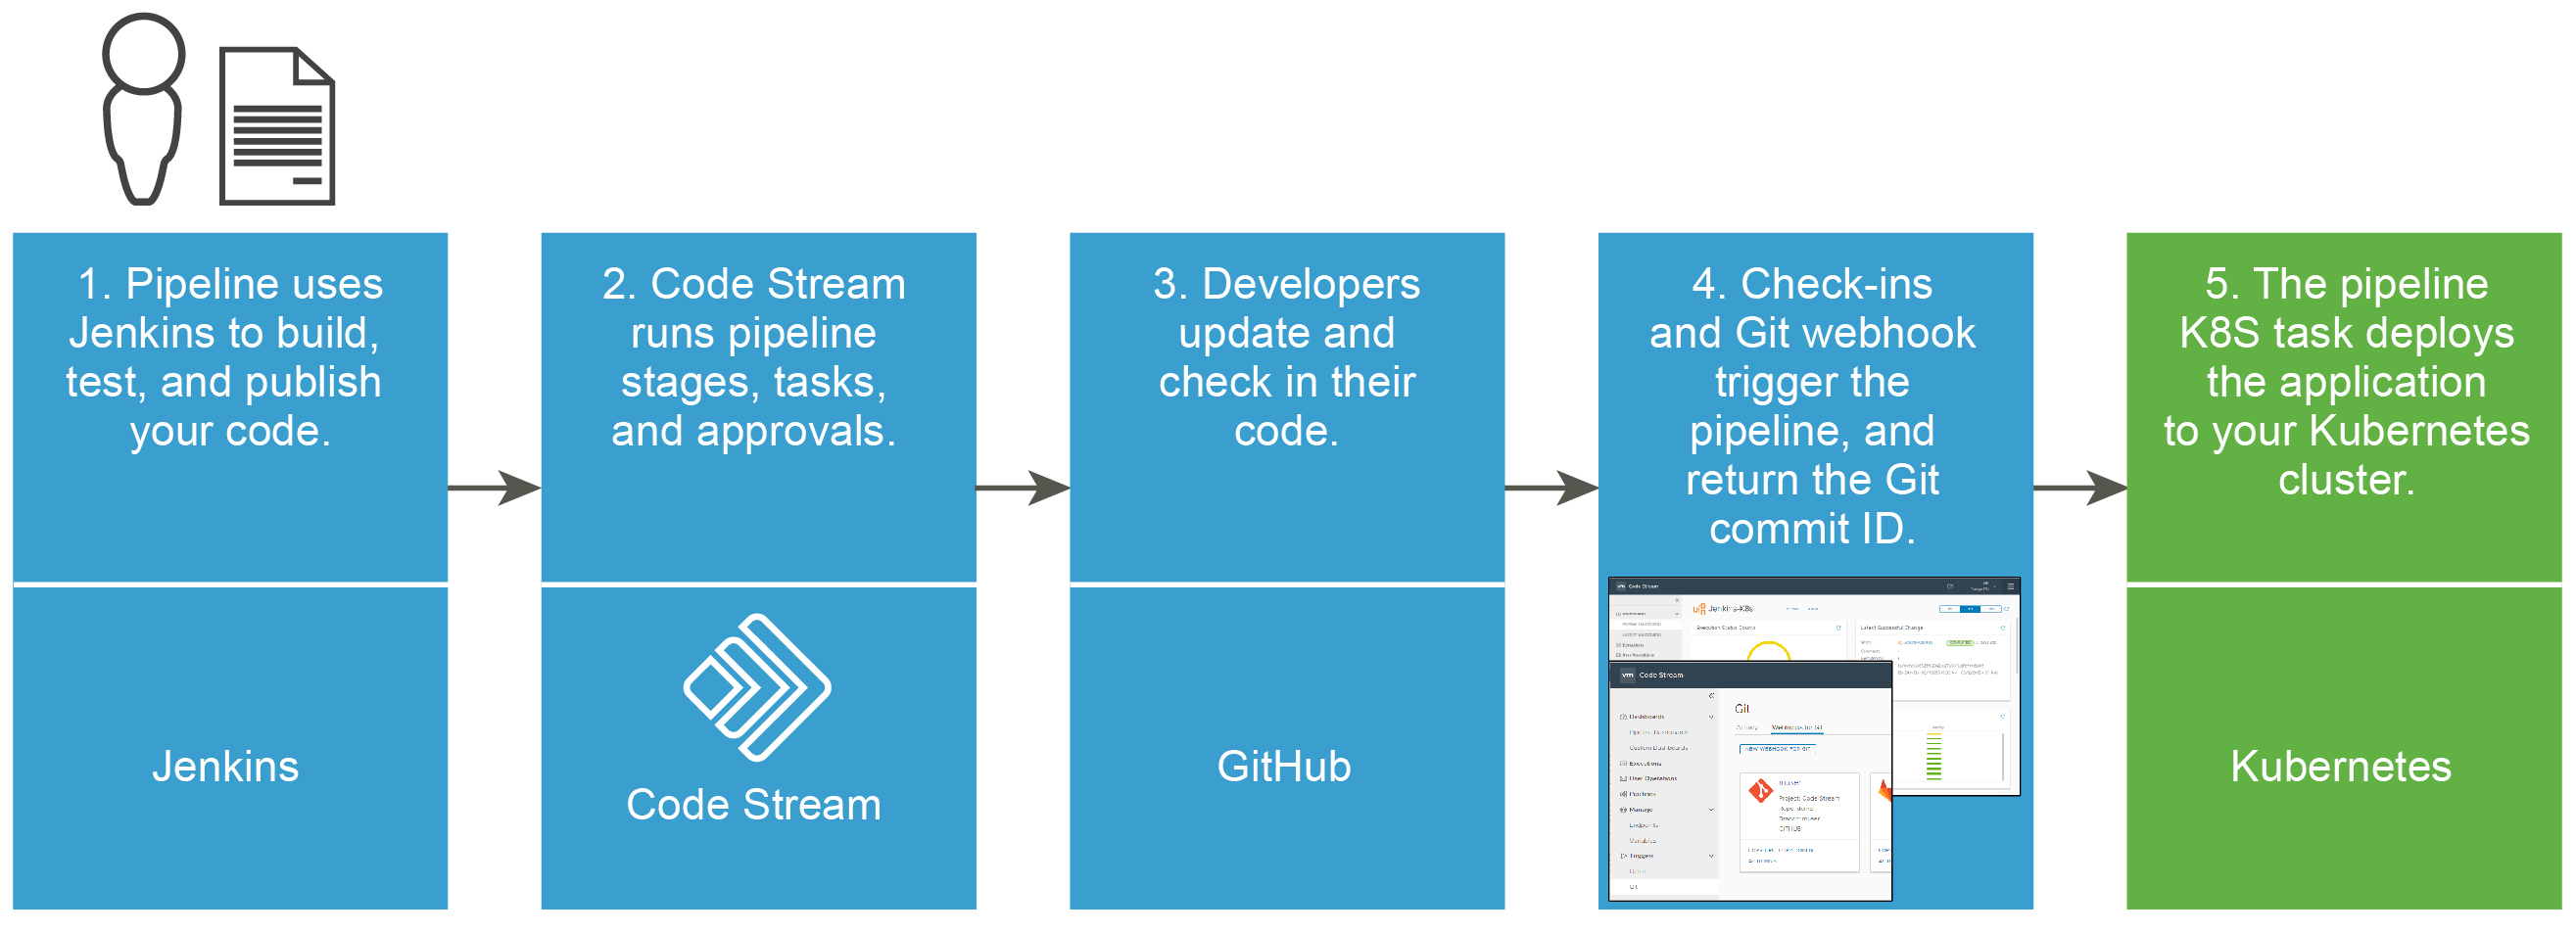 将应用程序部署到 Kubernetes 集群的工作流使用 Jenkins、Code Stream、GitHub、适用于 Git 的触发器和 Kubernetes。